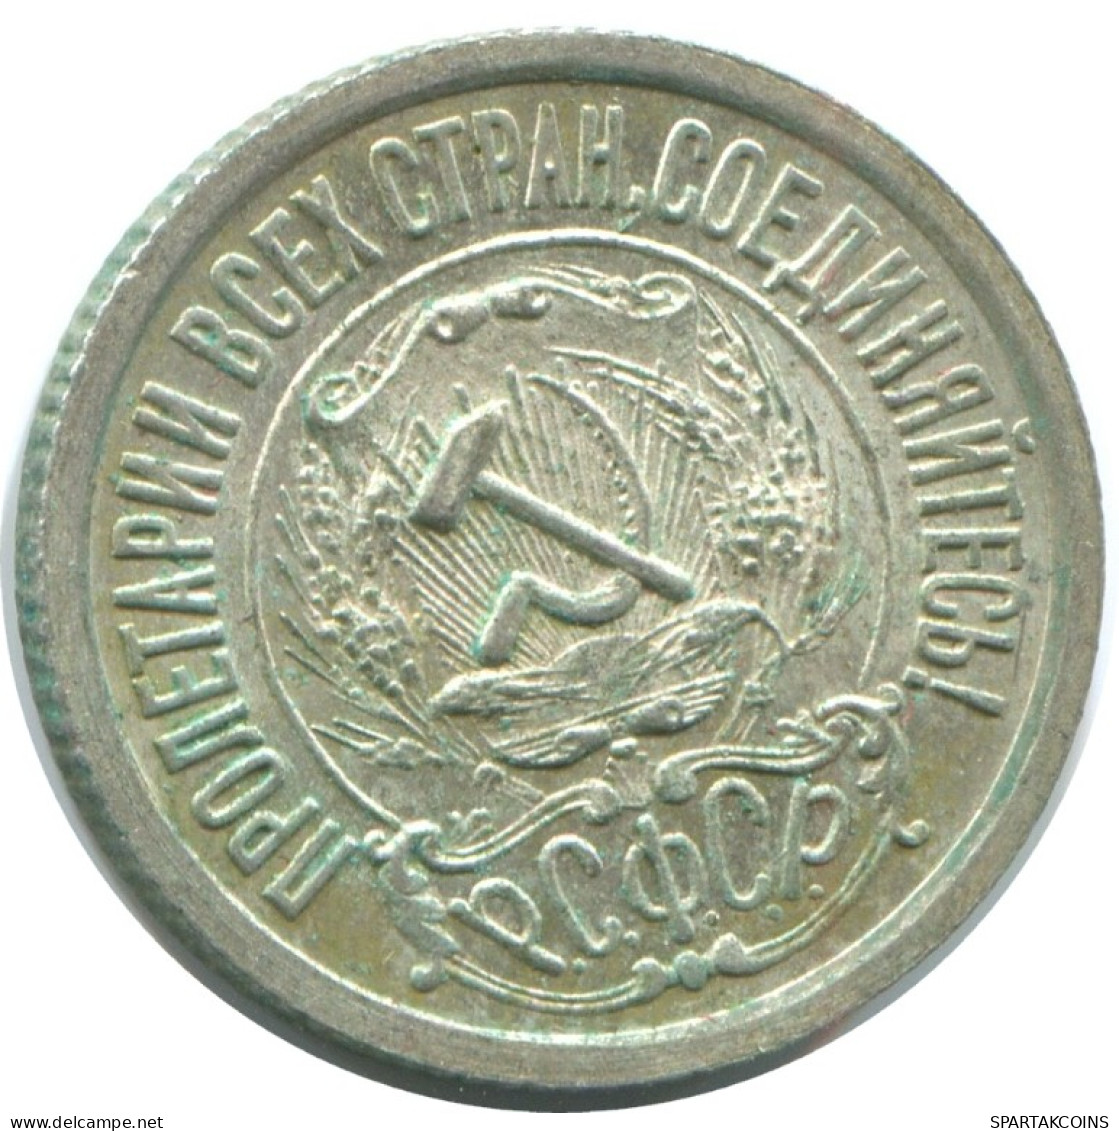 15 KOPEKS 1923 RUSIA RUSSIA RSFSR PLATA Moneda HIGH GRADE #AF156.4.E.A - Russland